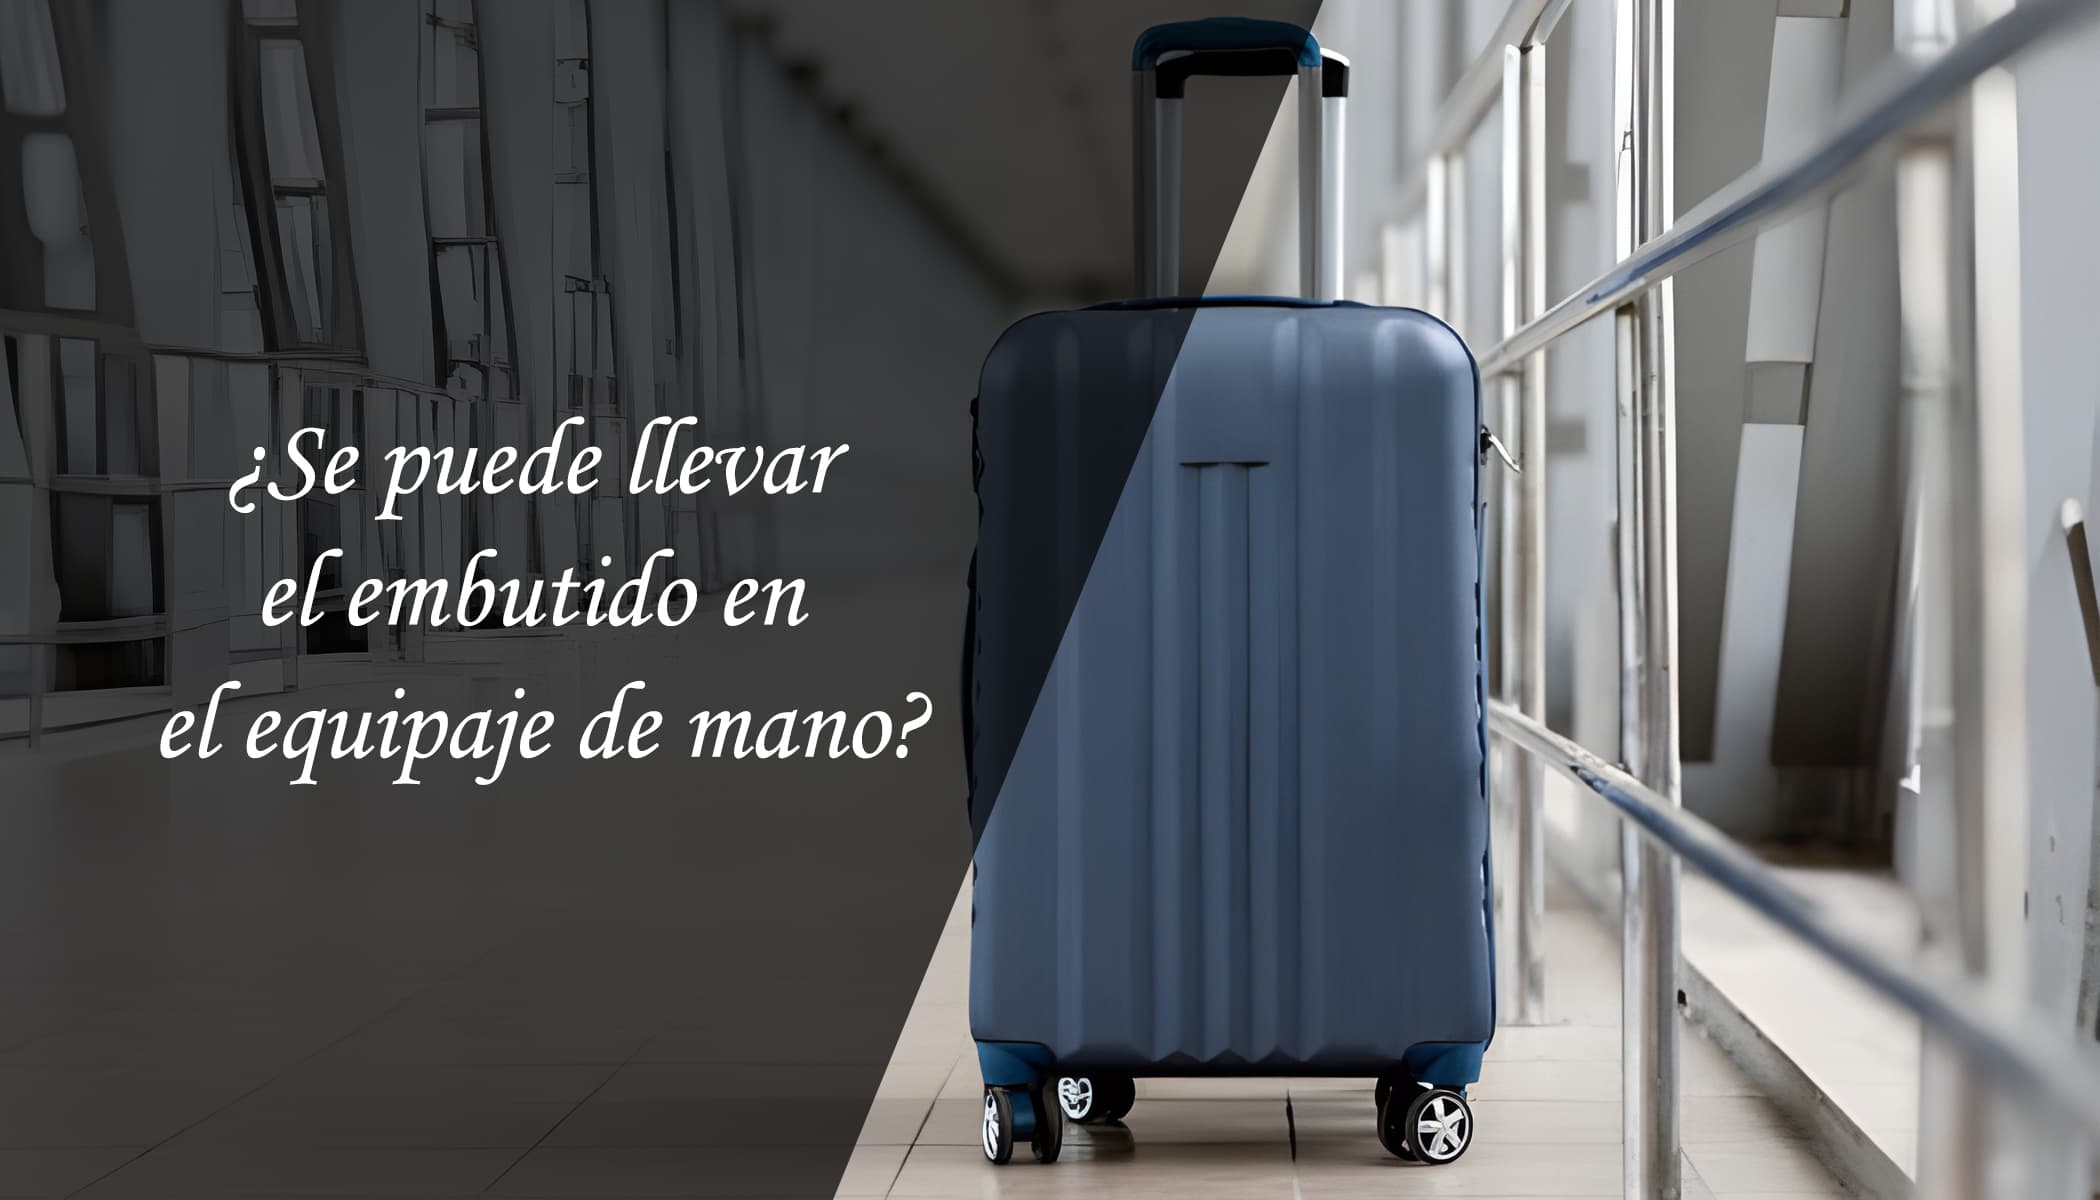 Se puede llevar el embutido en el equipaje de mano? – Marcelino